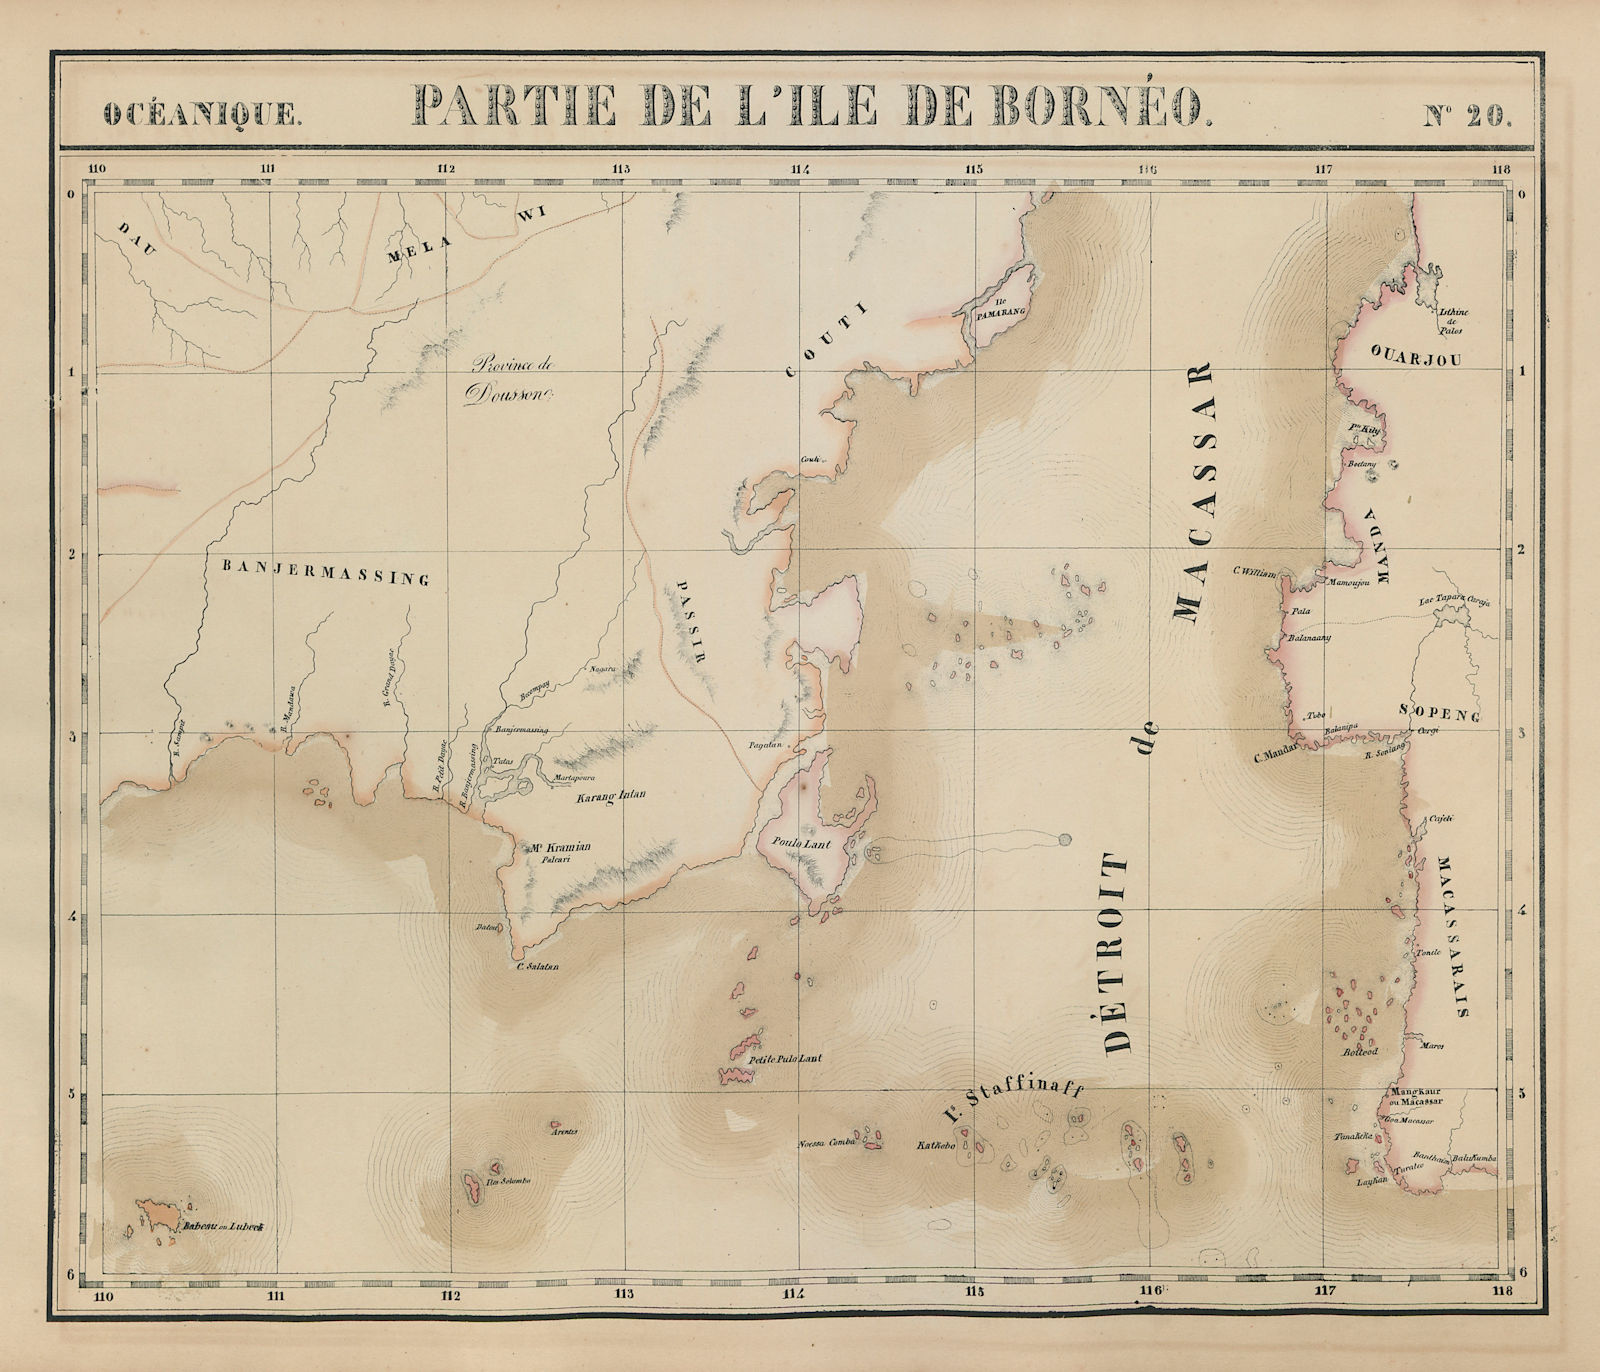 Associate Product Océanique. Partie de l'ile de Bornéo #20. Sulawesi. VANDERMAELEN 1827 old map